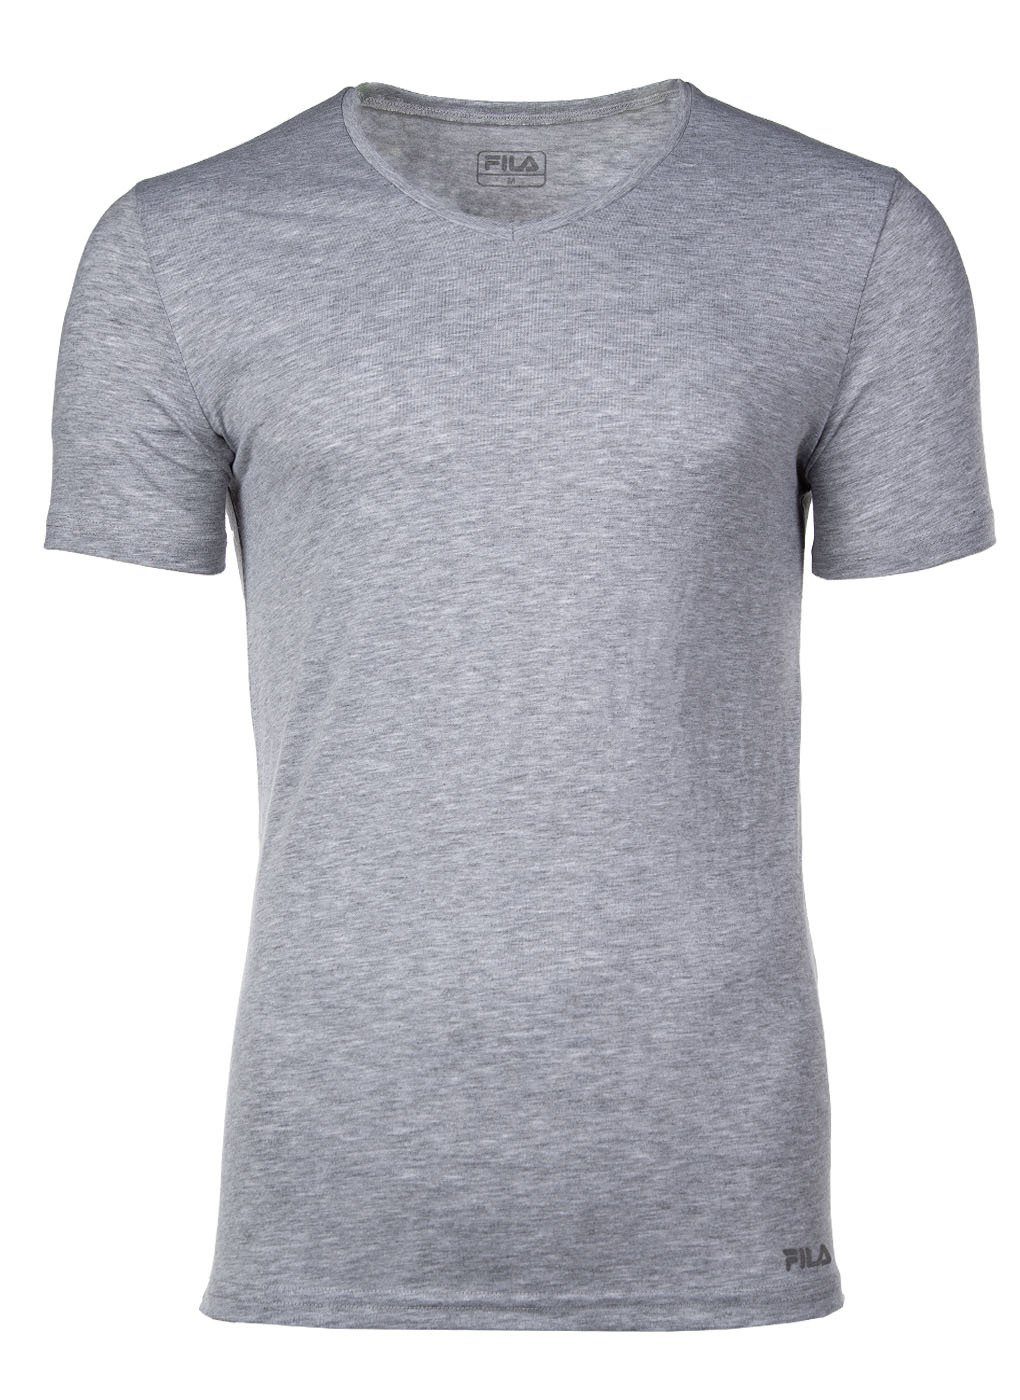 Single Herren - Jersey Unterhemd V-Ausschnitt, Unterhemd Fila Grau